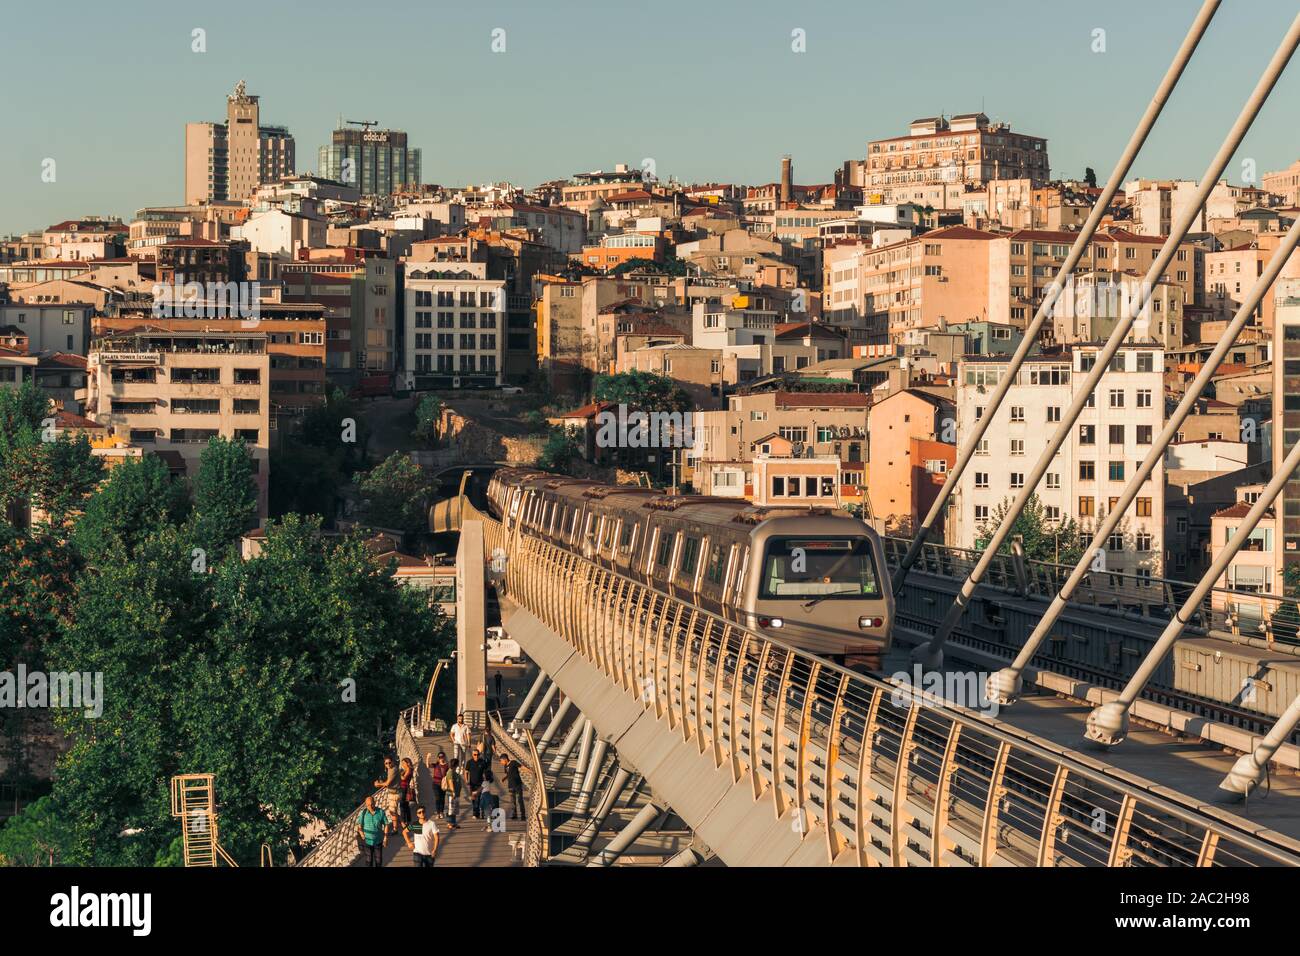 Septembre 2019 ; pont métro Halic, corne d'or, Istanbul, Turquie Banque D'Images